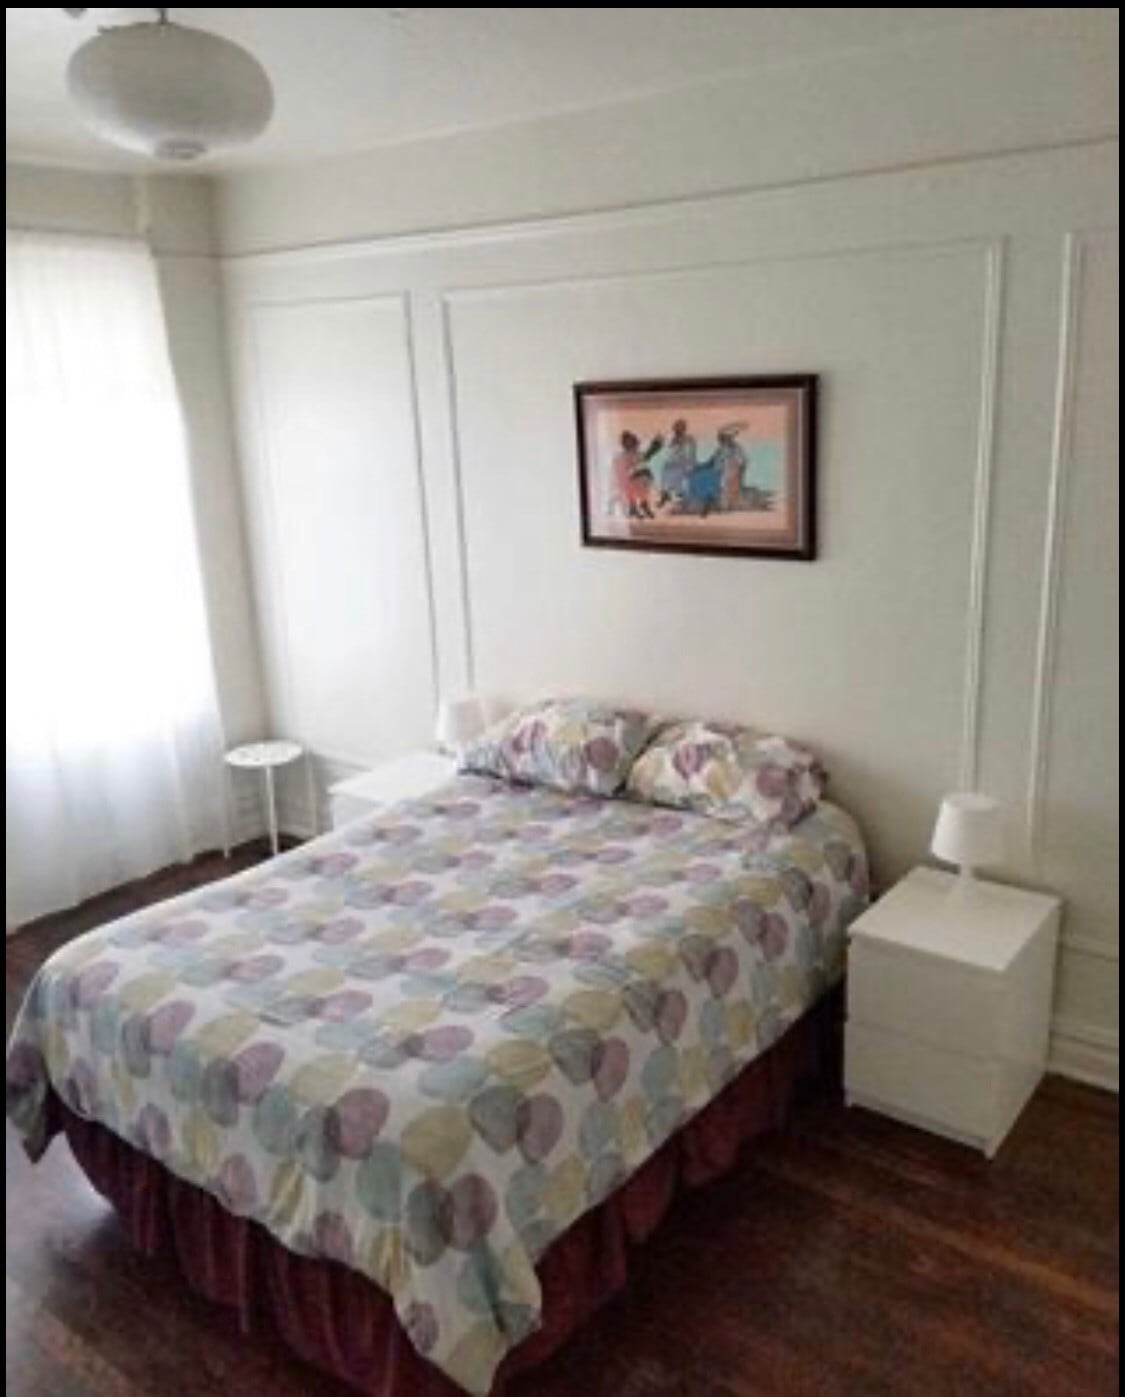 宽敞漂亮公寓中的私人舒适房间。